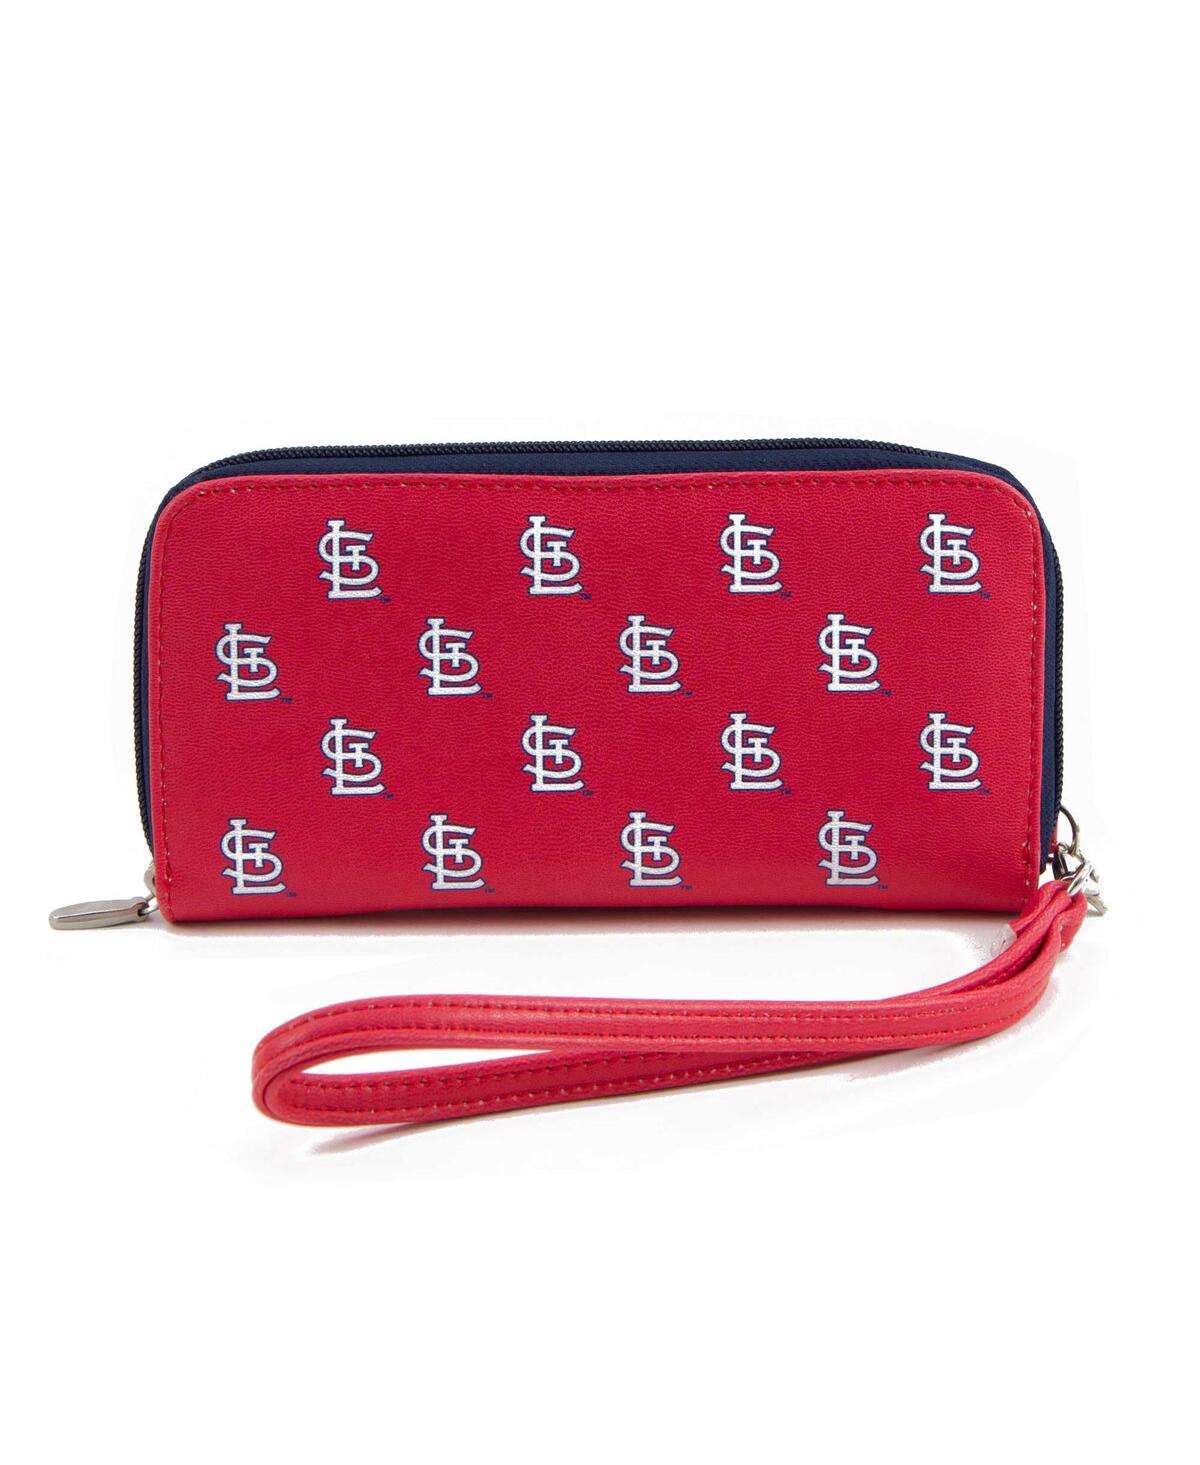 St. Louis Cardinals Women's Zip-Around Wristlet Wallet